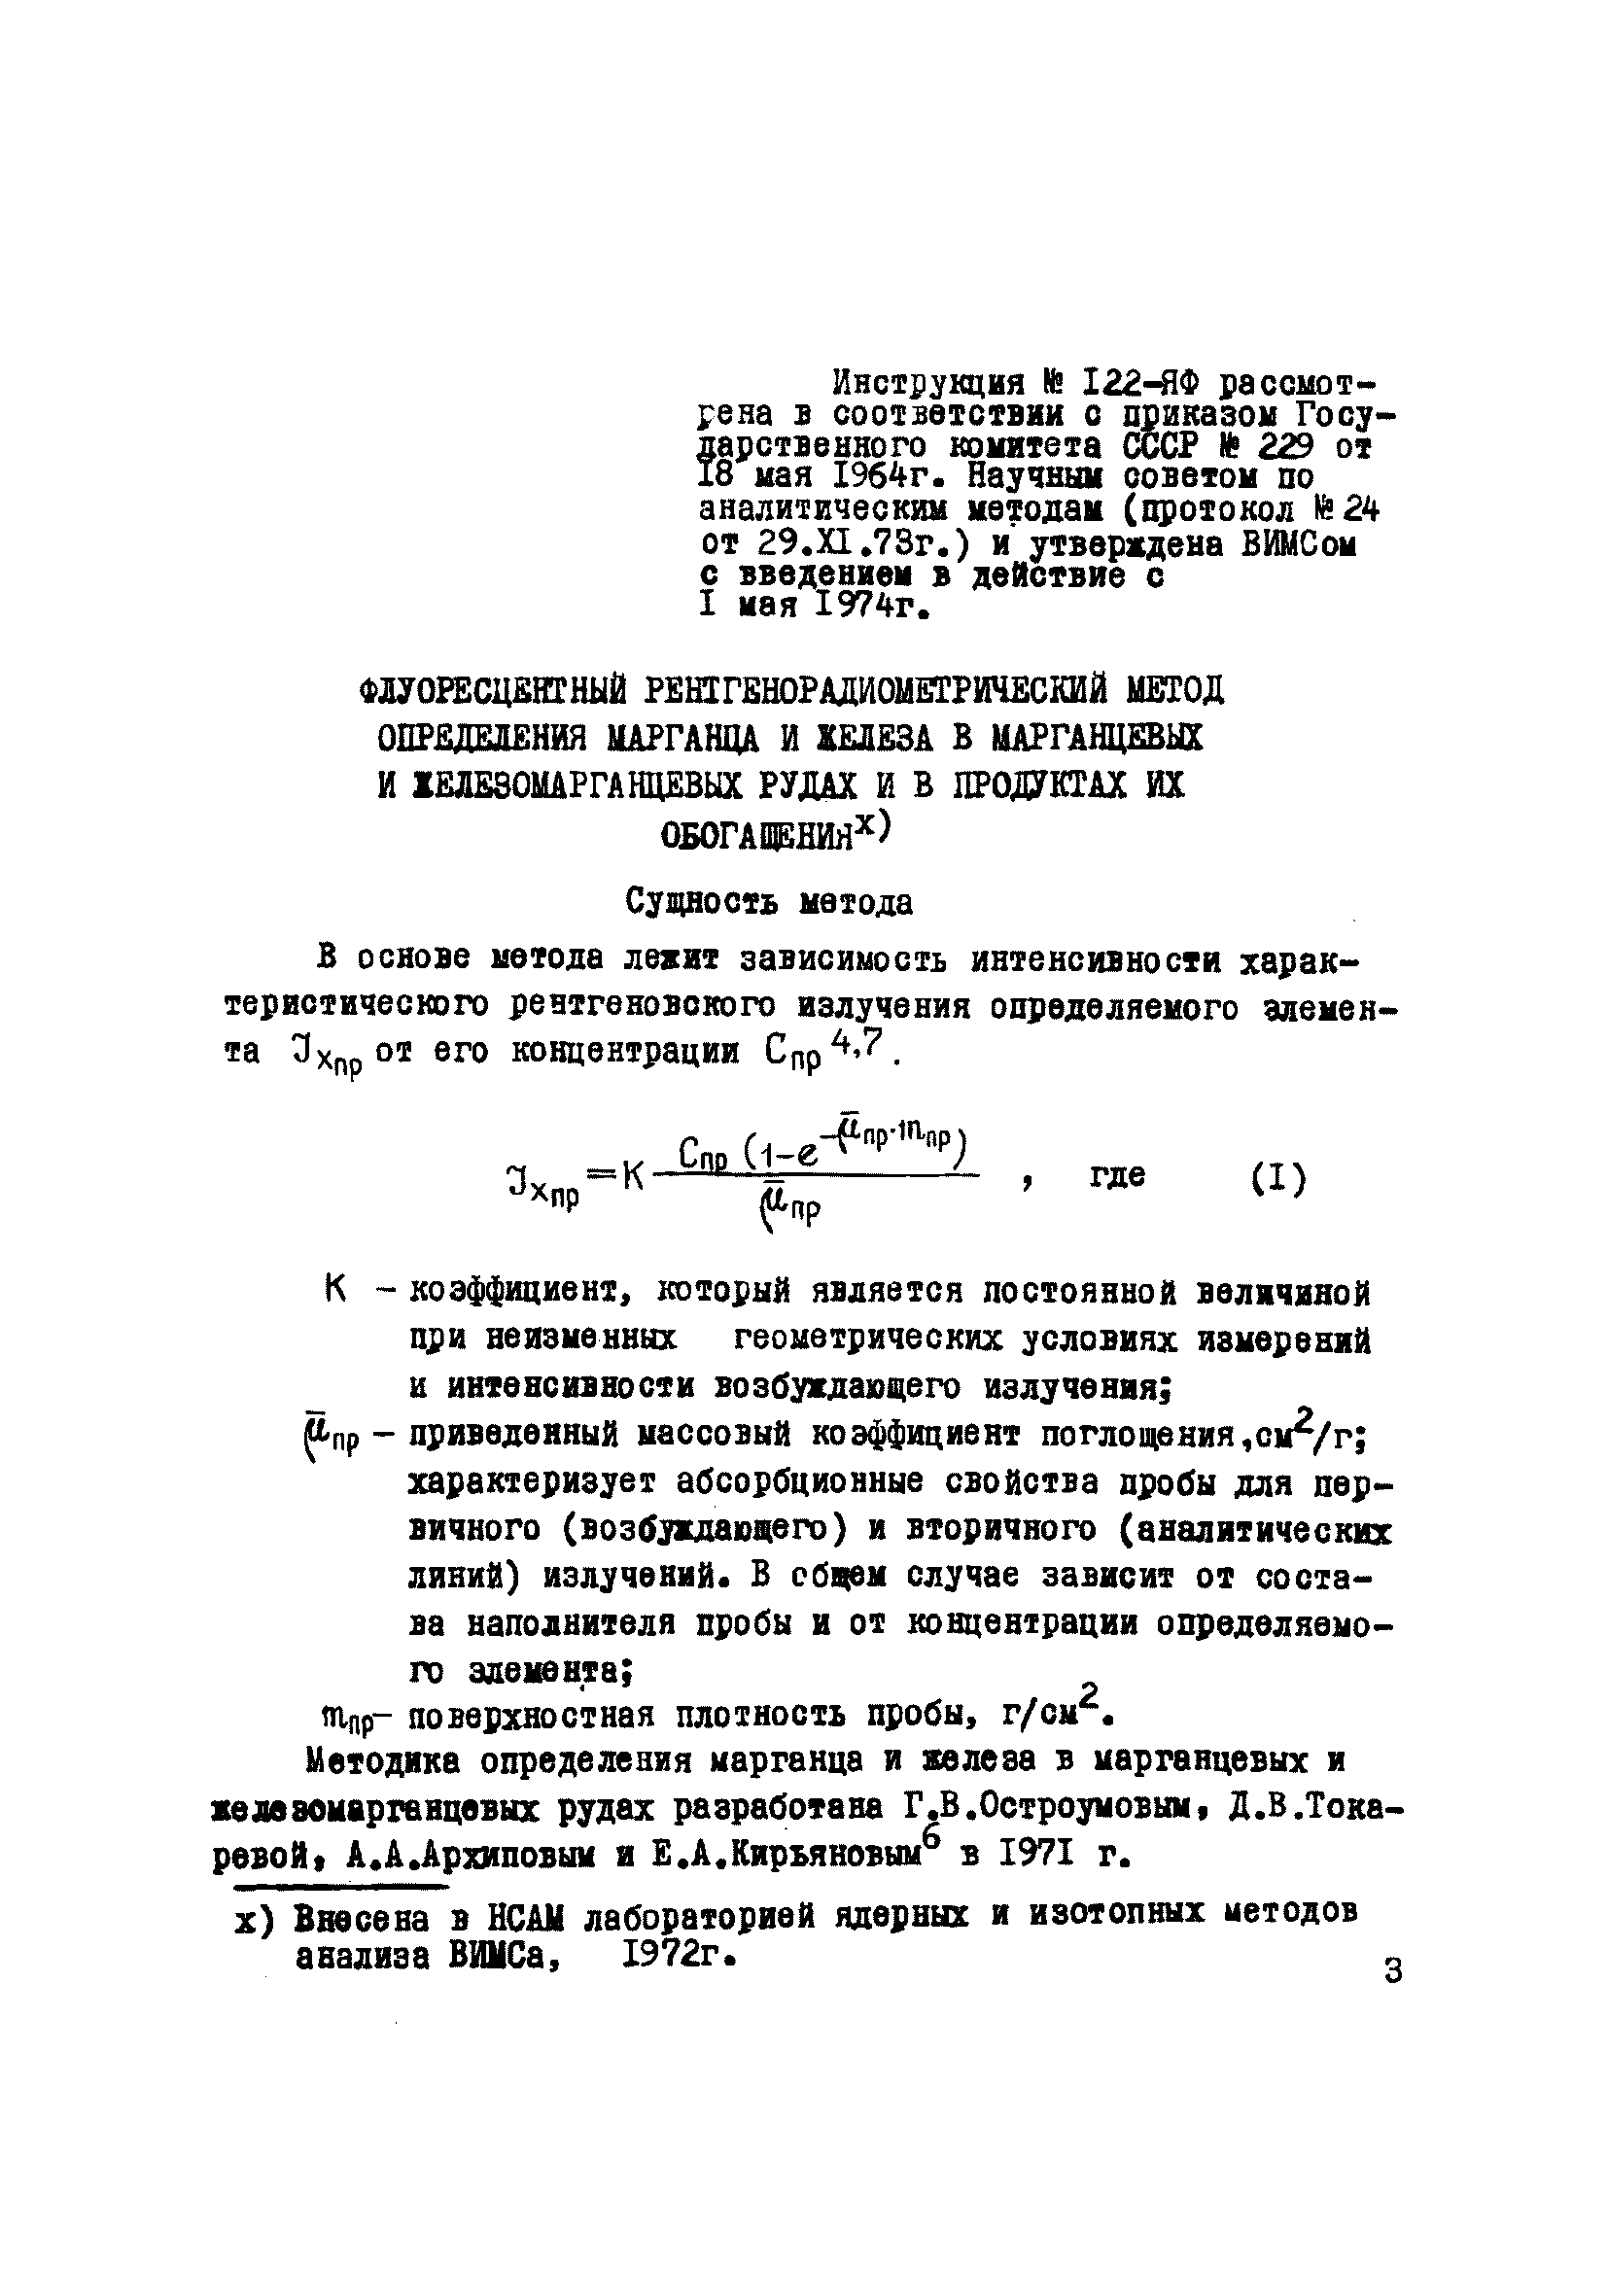 Инструкция НСАМ 122-ЯФ